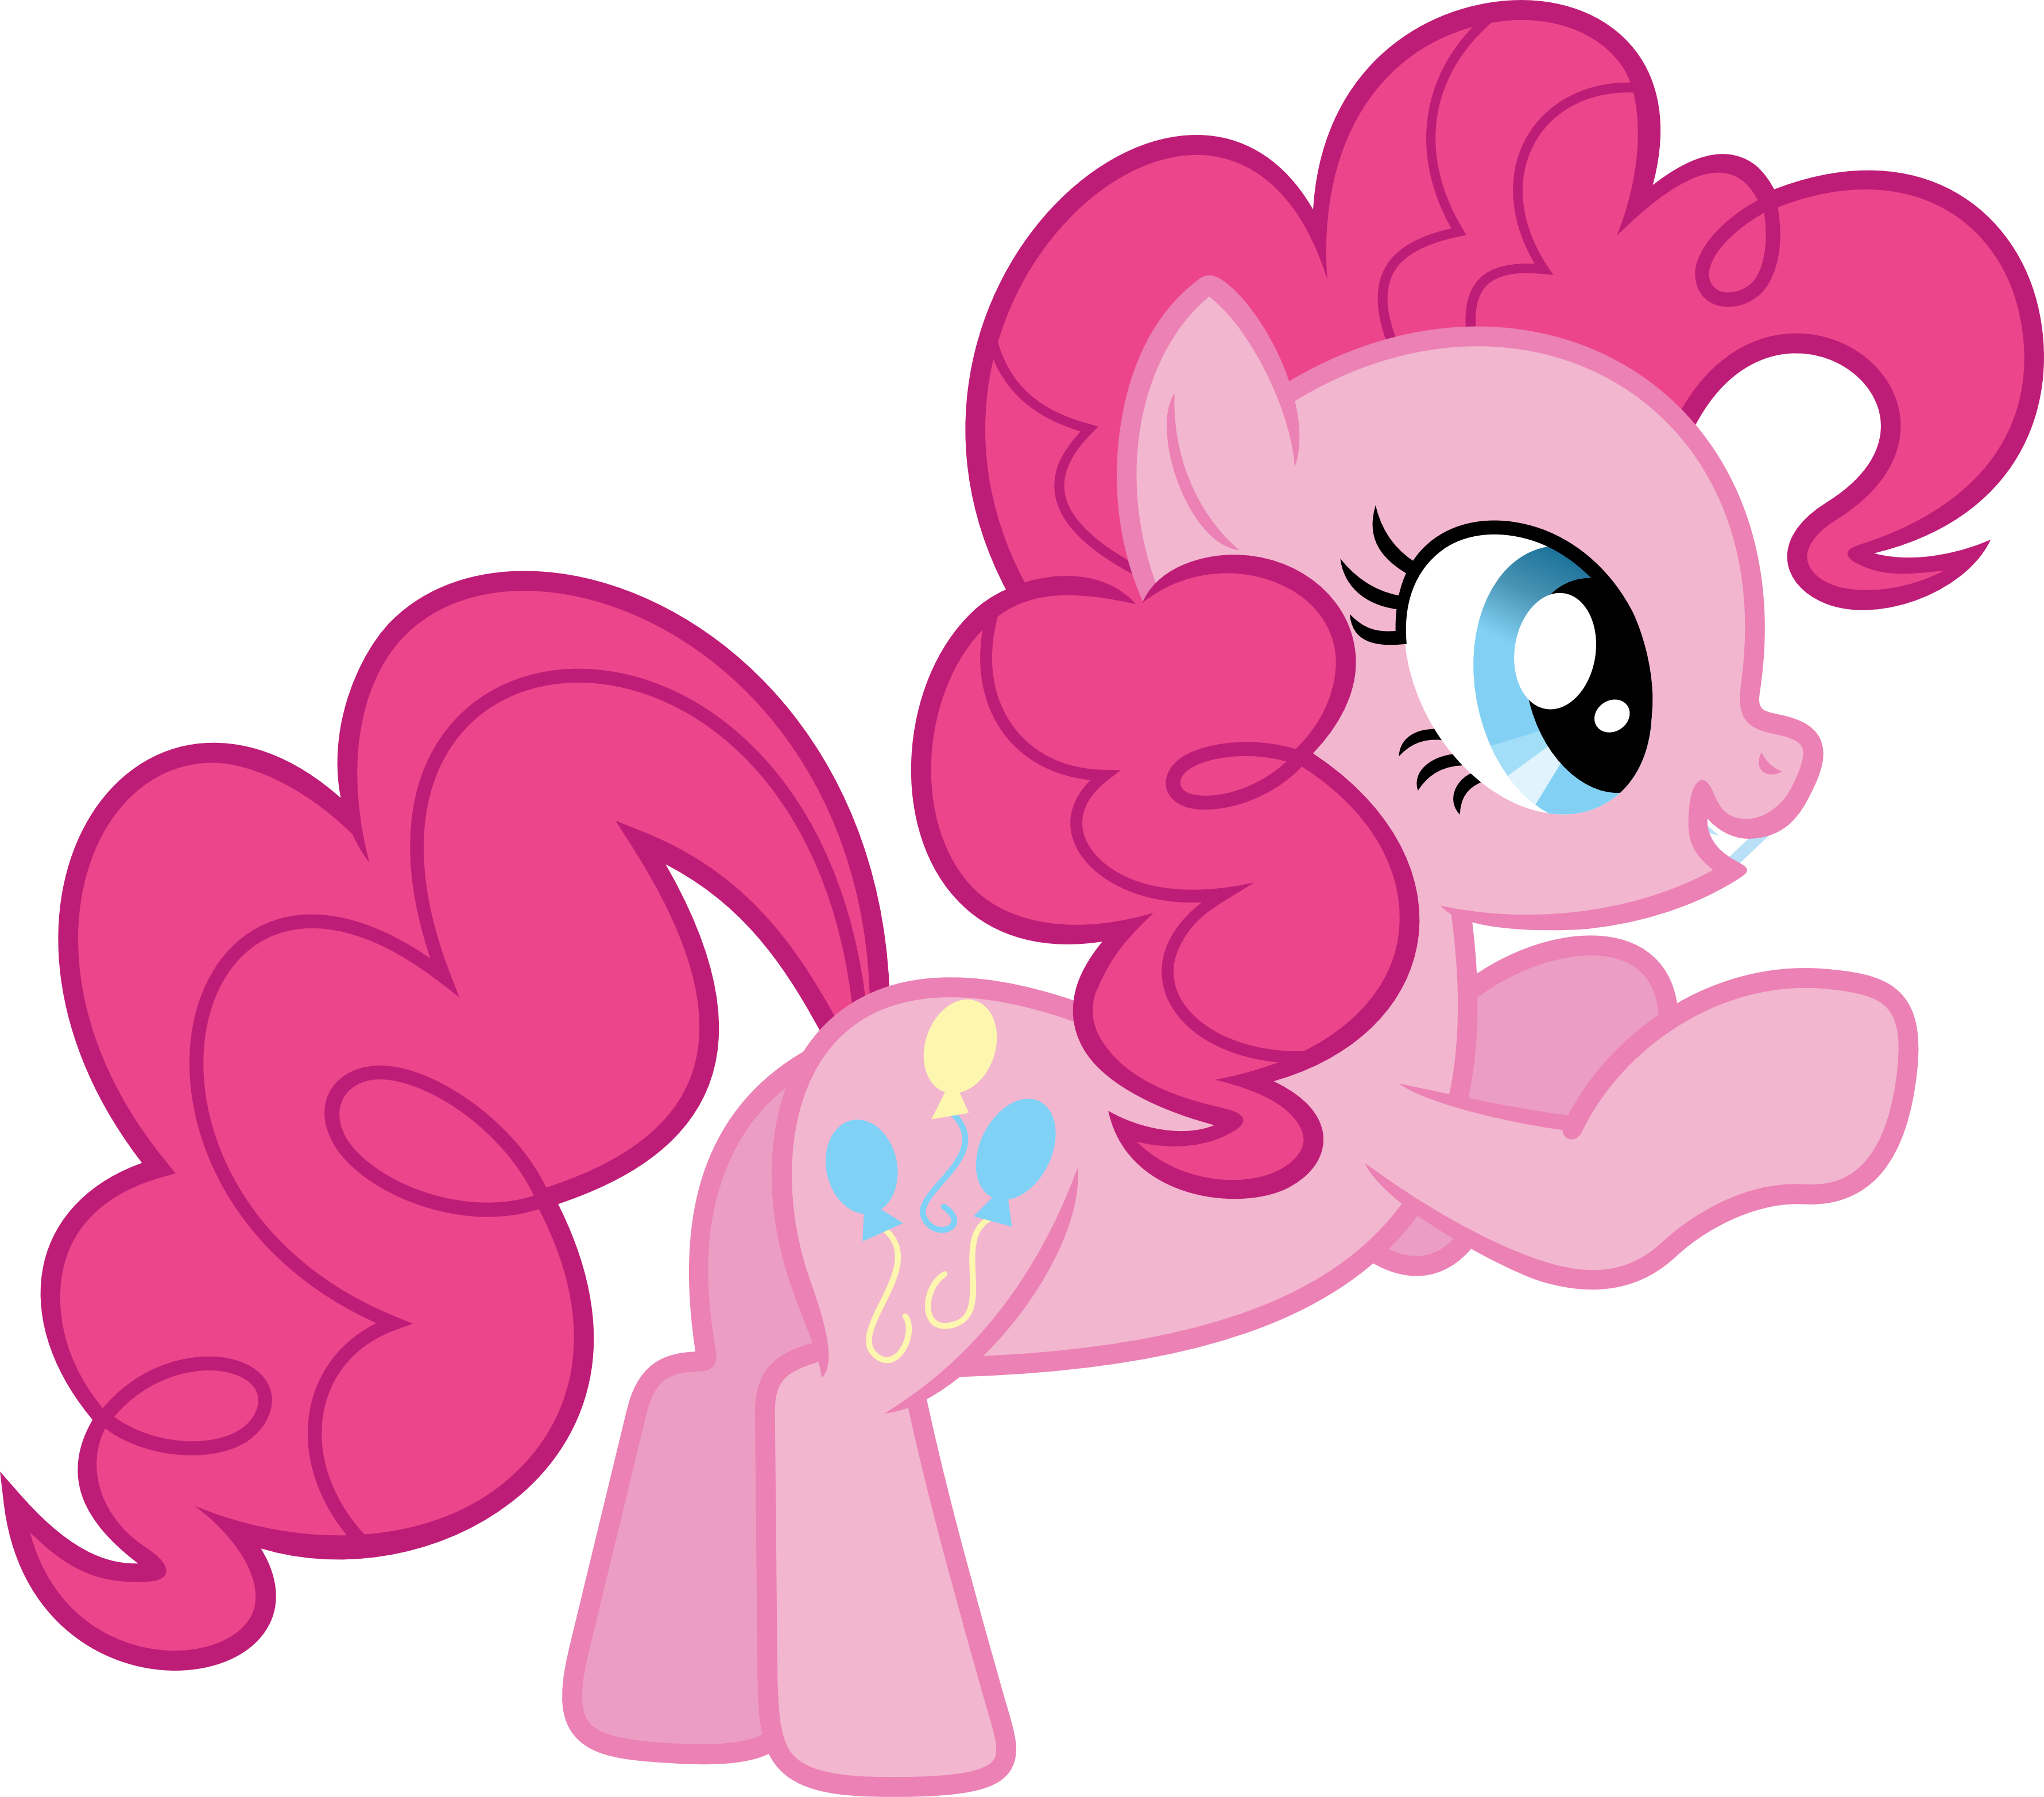 Pinkie Pie, Pinkie Pie, What Do You See By Porygon2z - My Little Pony Pinkie Pie (3560x3130)